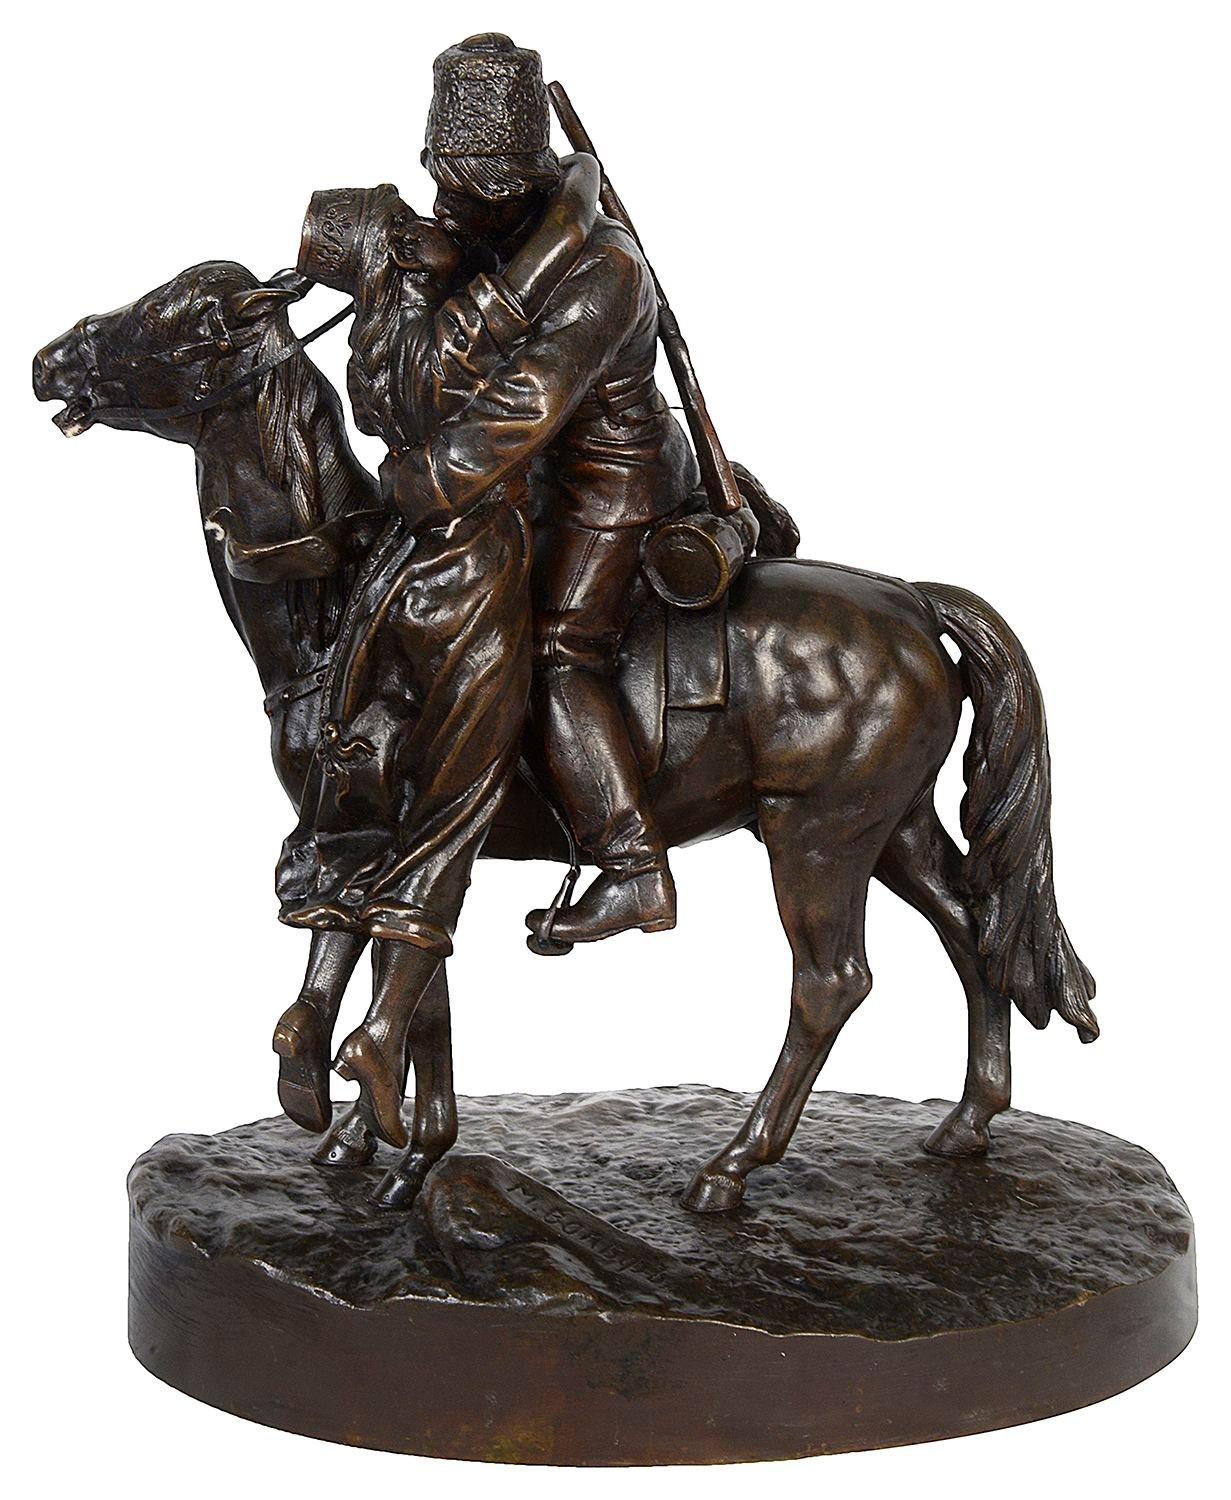 Groupe en bronze de très bonne qualité du XIXe siècle représentant un soldat à dos de cheval embrassant son amoureuse.
Signé à la base.


Lot 75. 57524. BCKZN